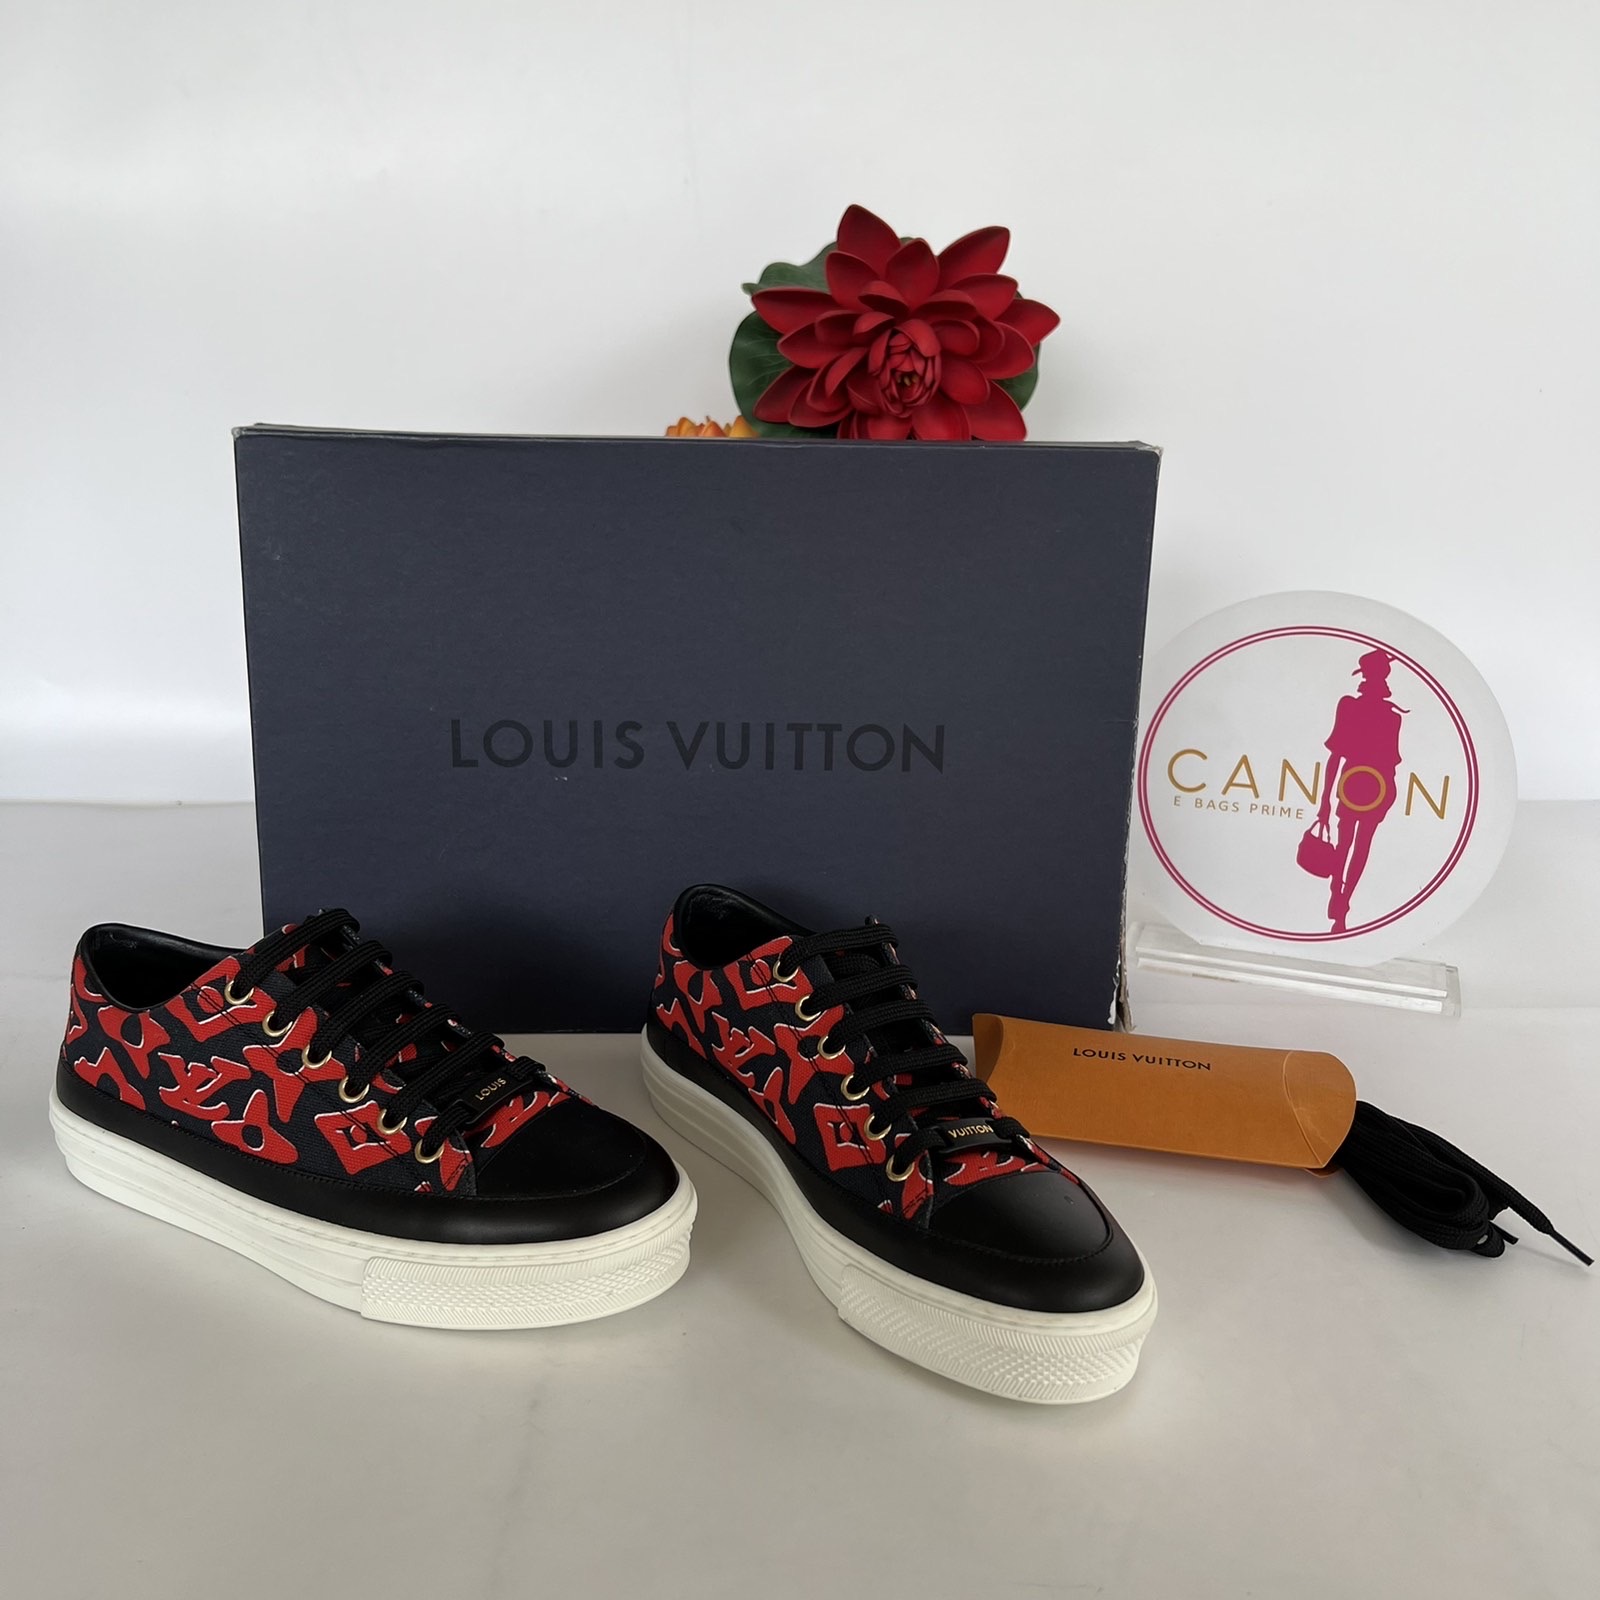 LOUIS VUITTON STELLAR OPEN BACK ORIGINAL USED SNEAKERS, Women's Fashion,  Footwear, Sneakers on Carousell